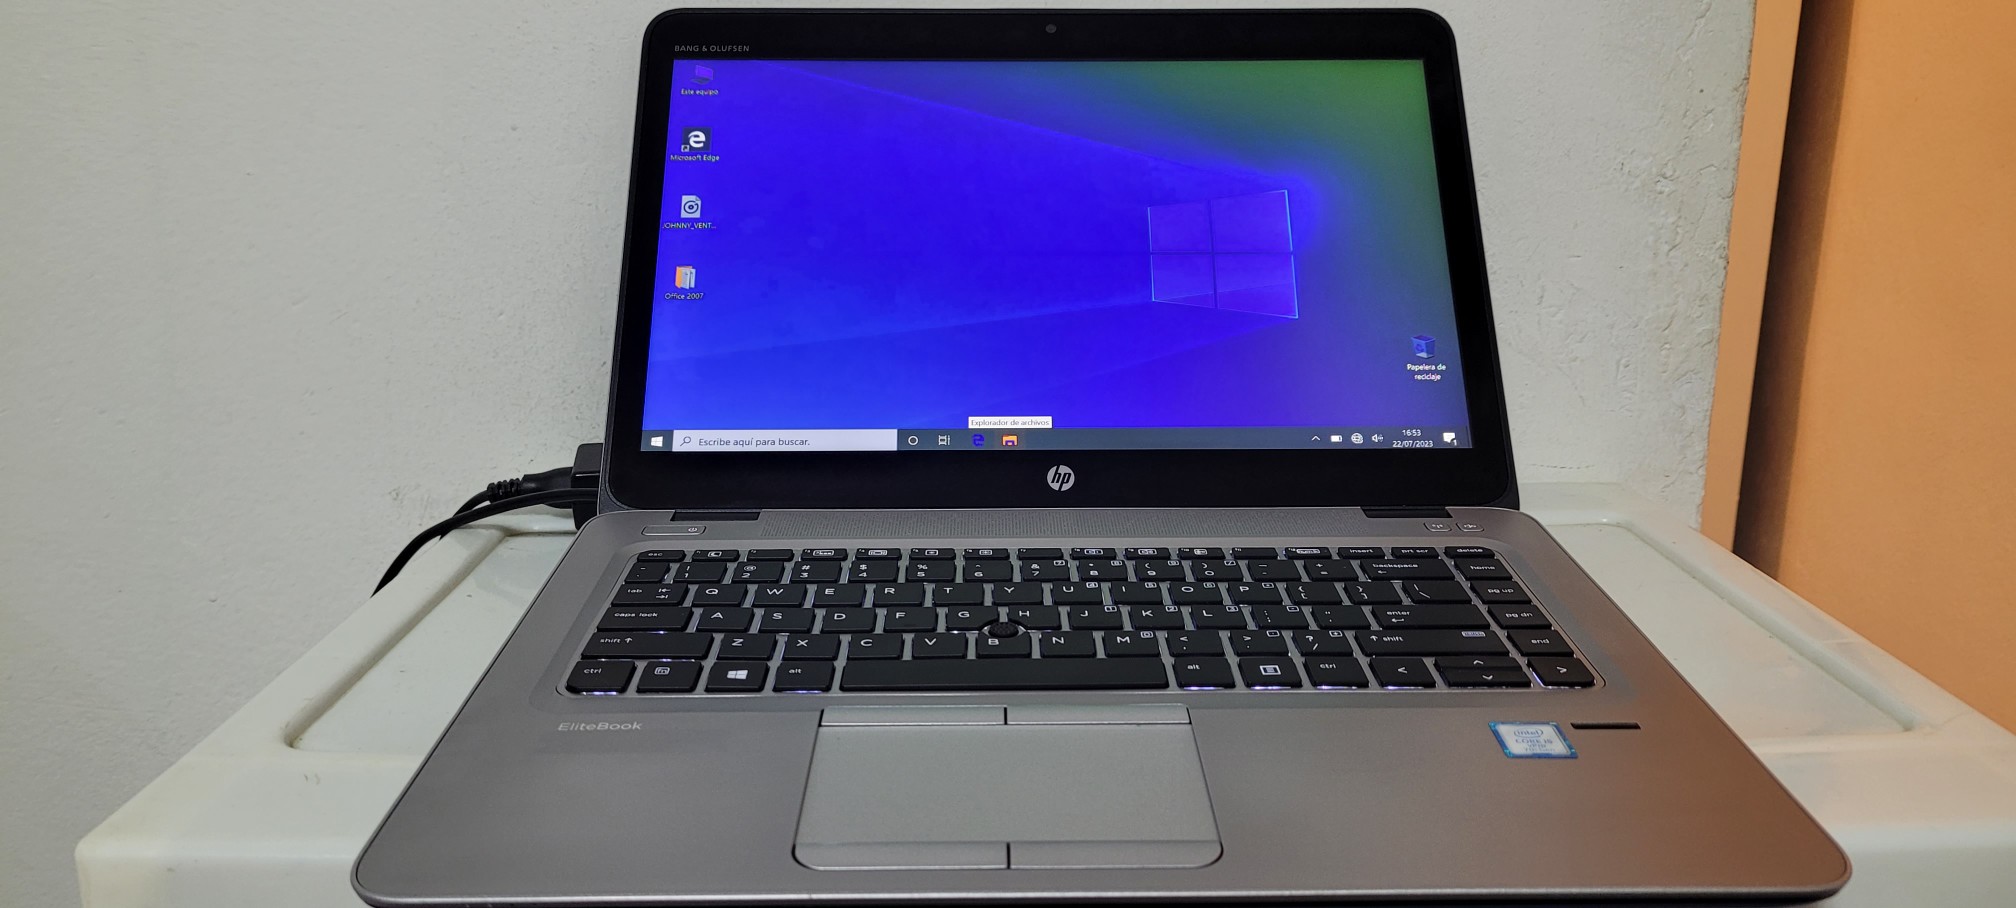 computadoras y laptops - laptop hp Touch 14 Pulg Core i5 7ma Ram 8gb ddr4 Disco 128gb Y 320gb 1080p 0